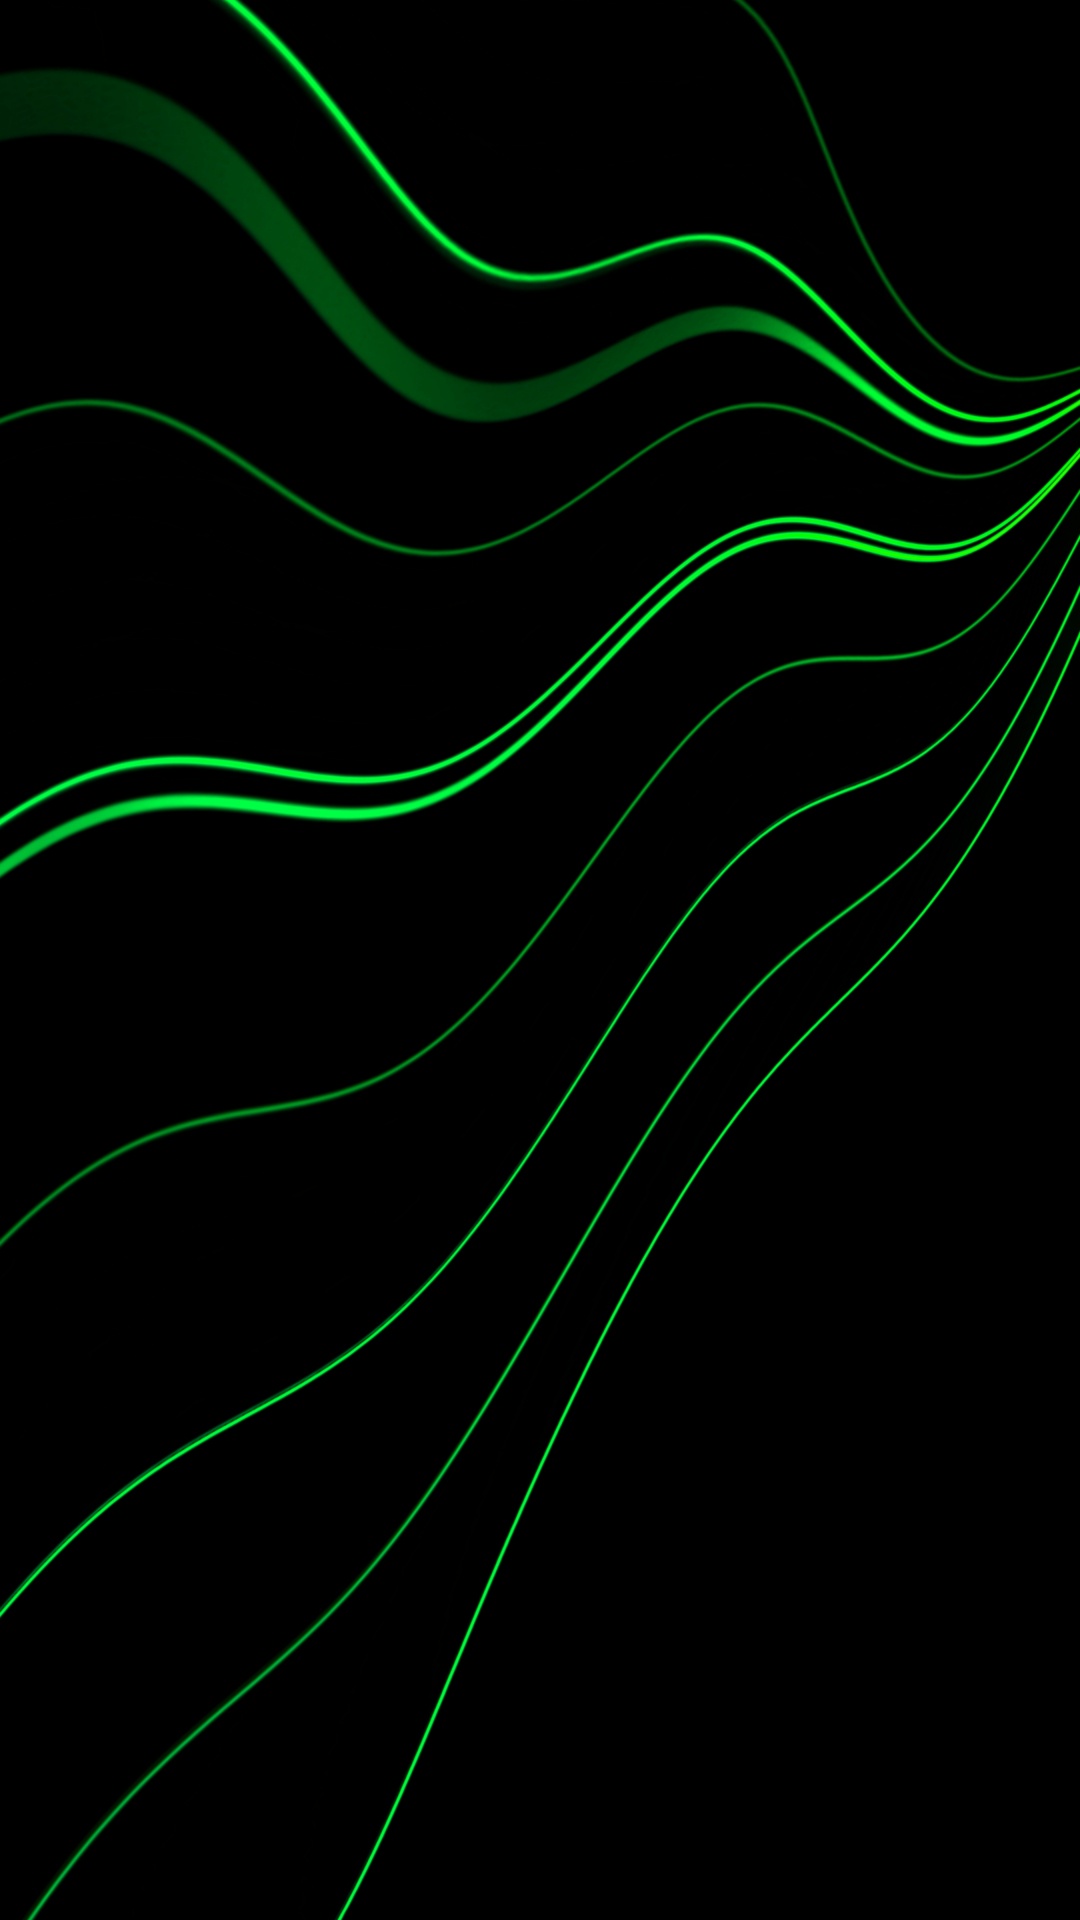 Grüne Und Weiße Linie Abbildung. Wallpaper in 1080x1920 Resolution